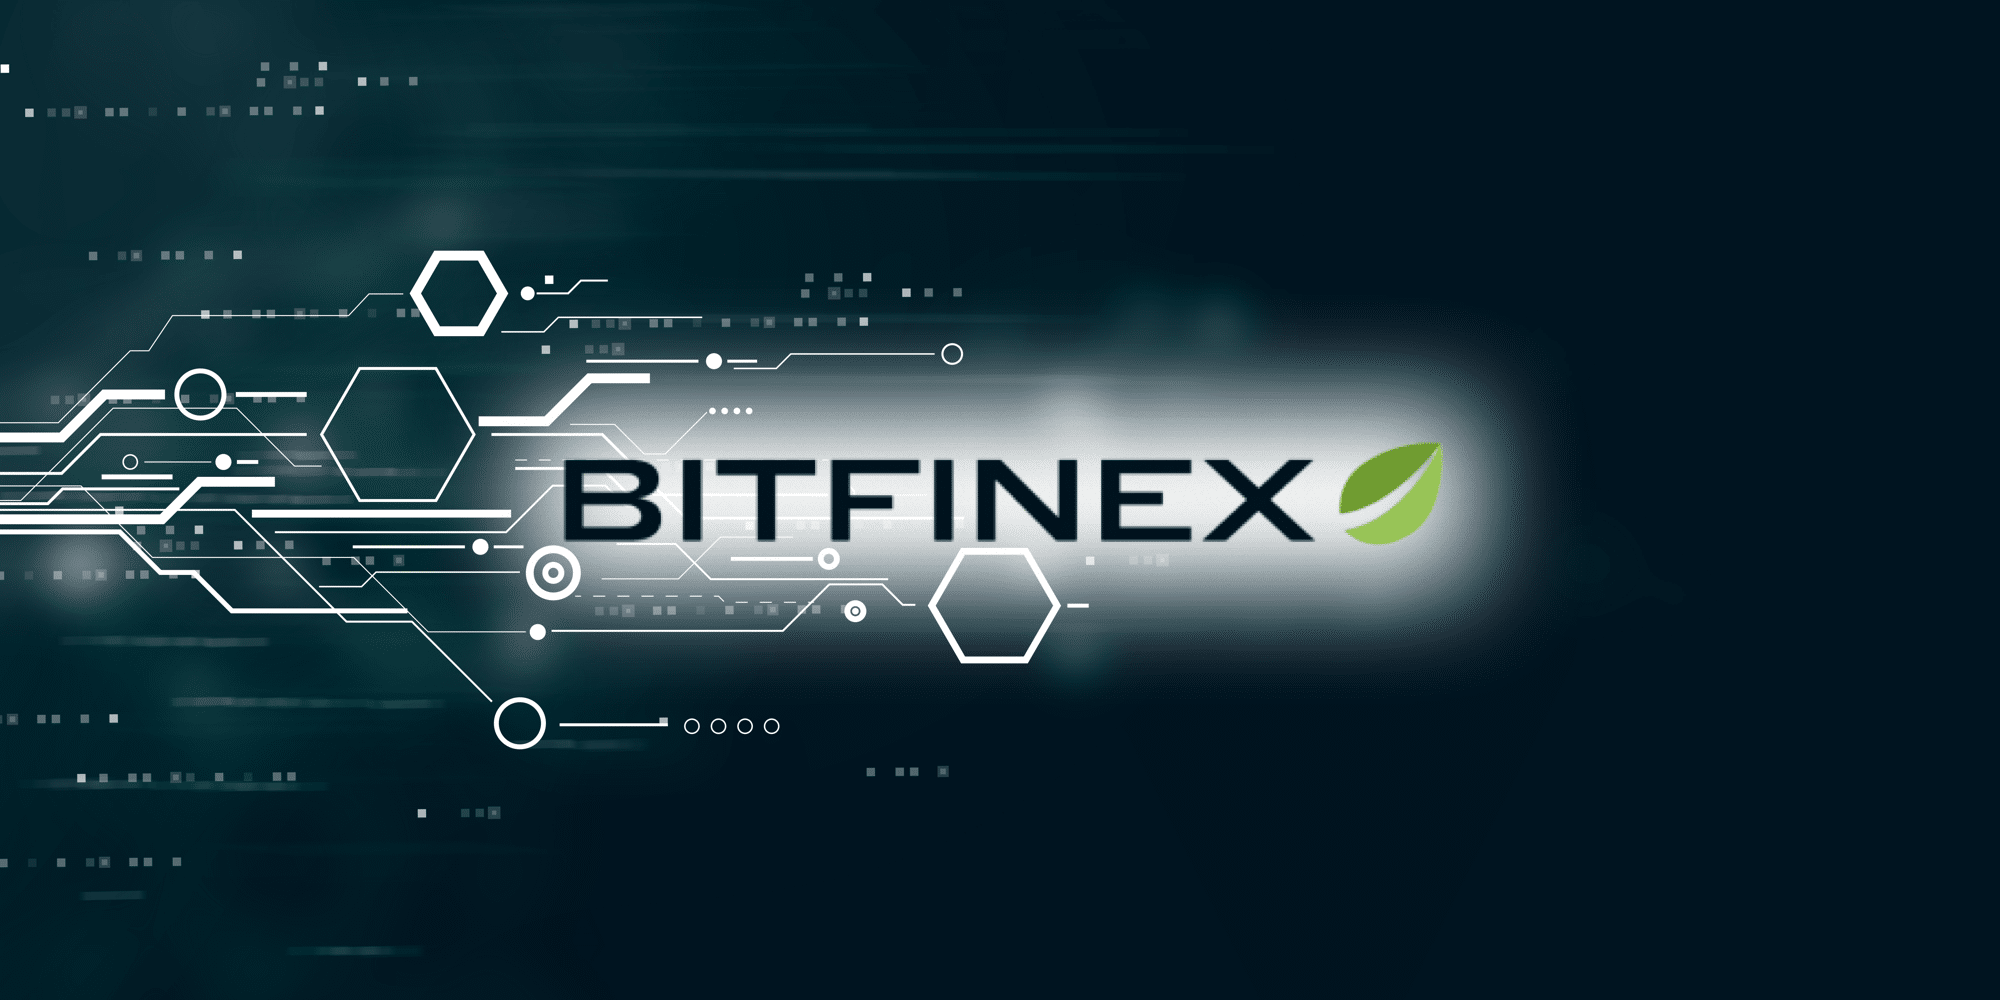 Биржа Bitfinex.com: полное руководство и обзор